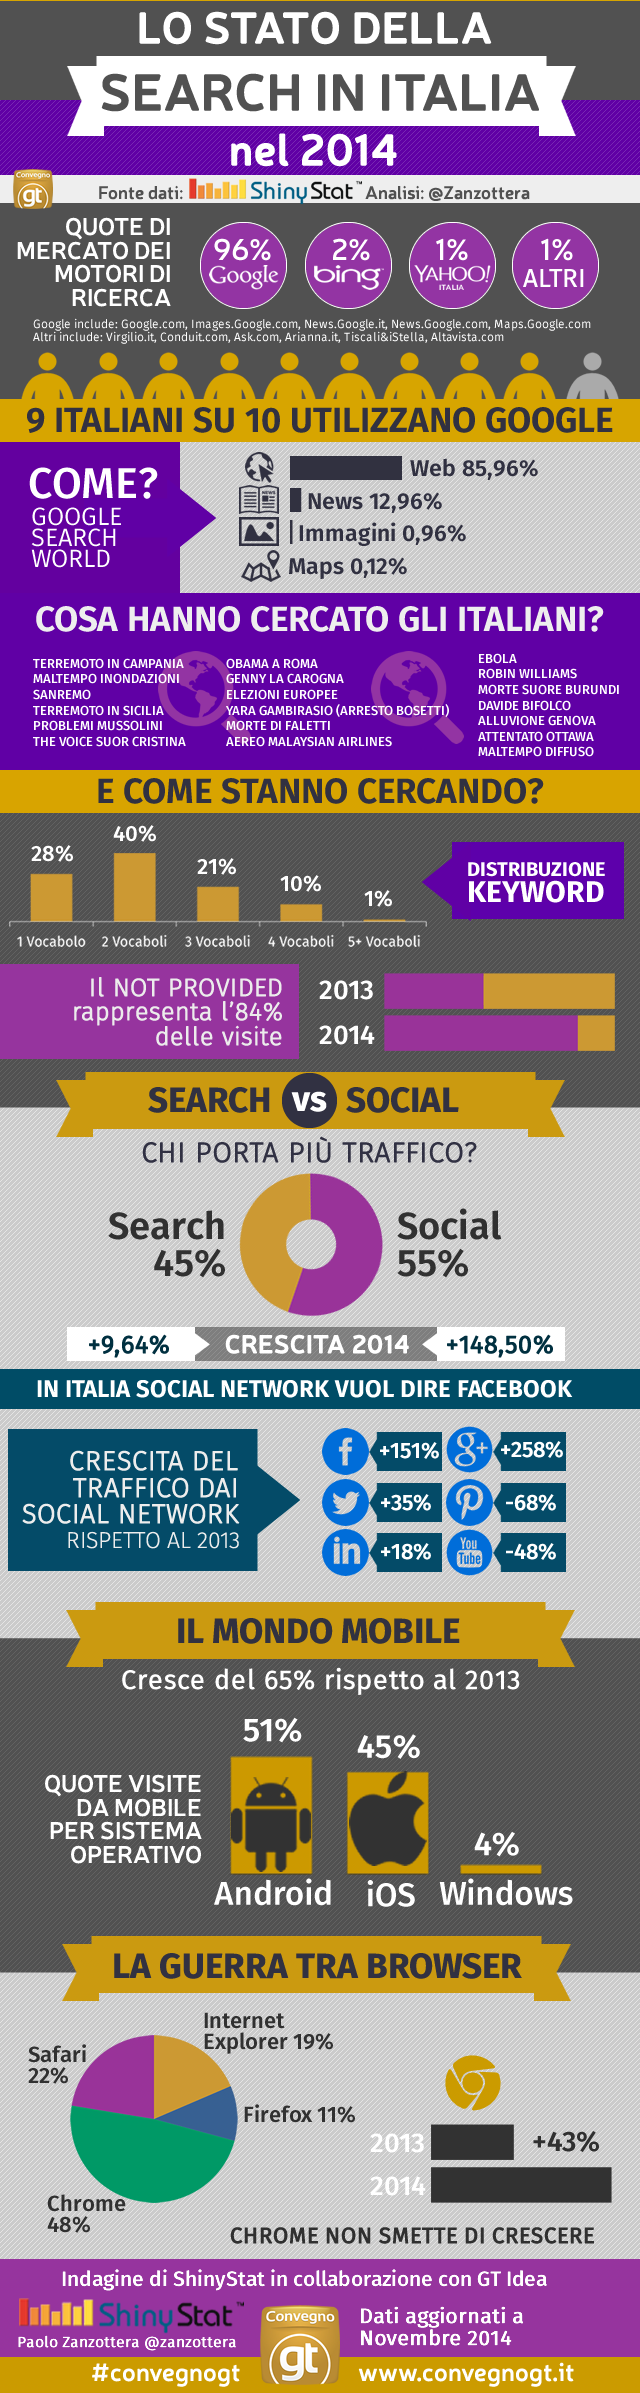 Search Marketing In Italia